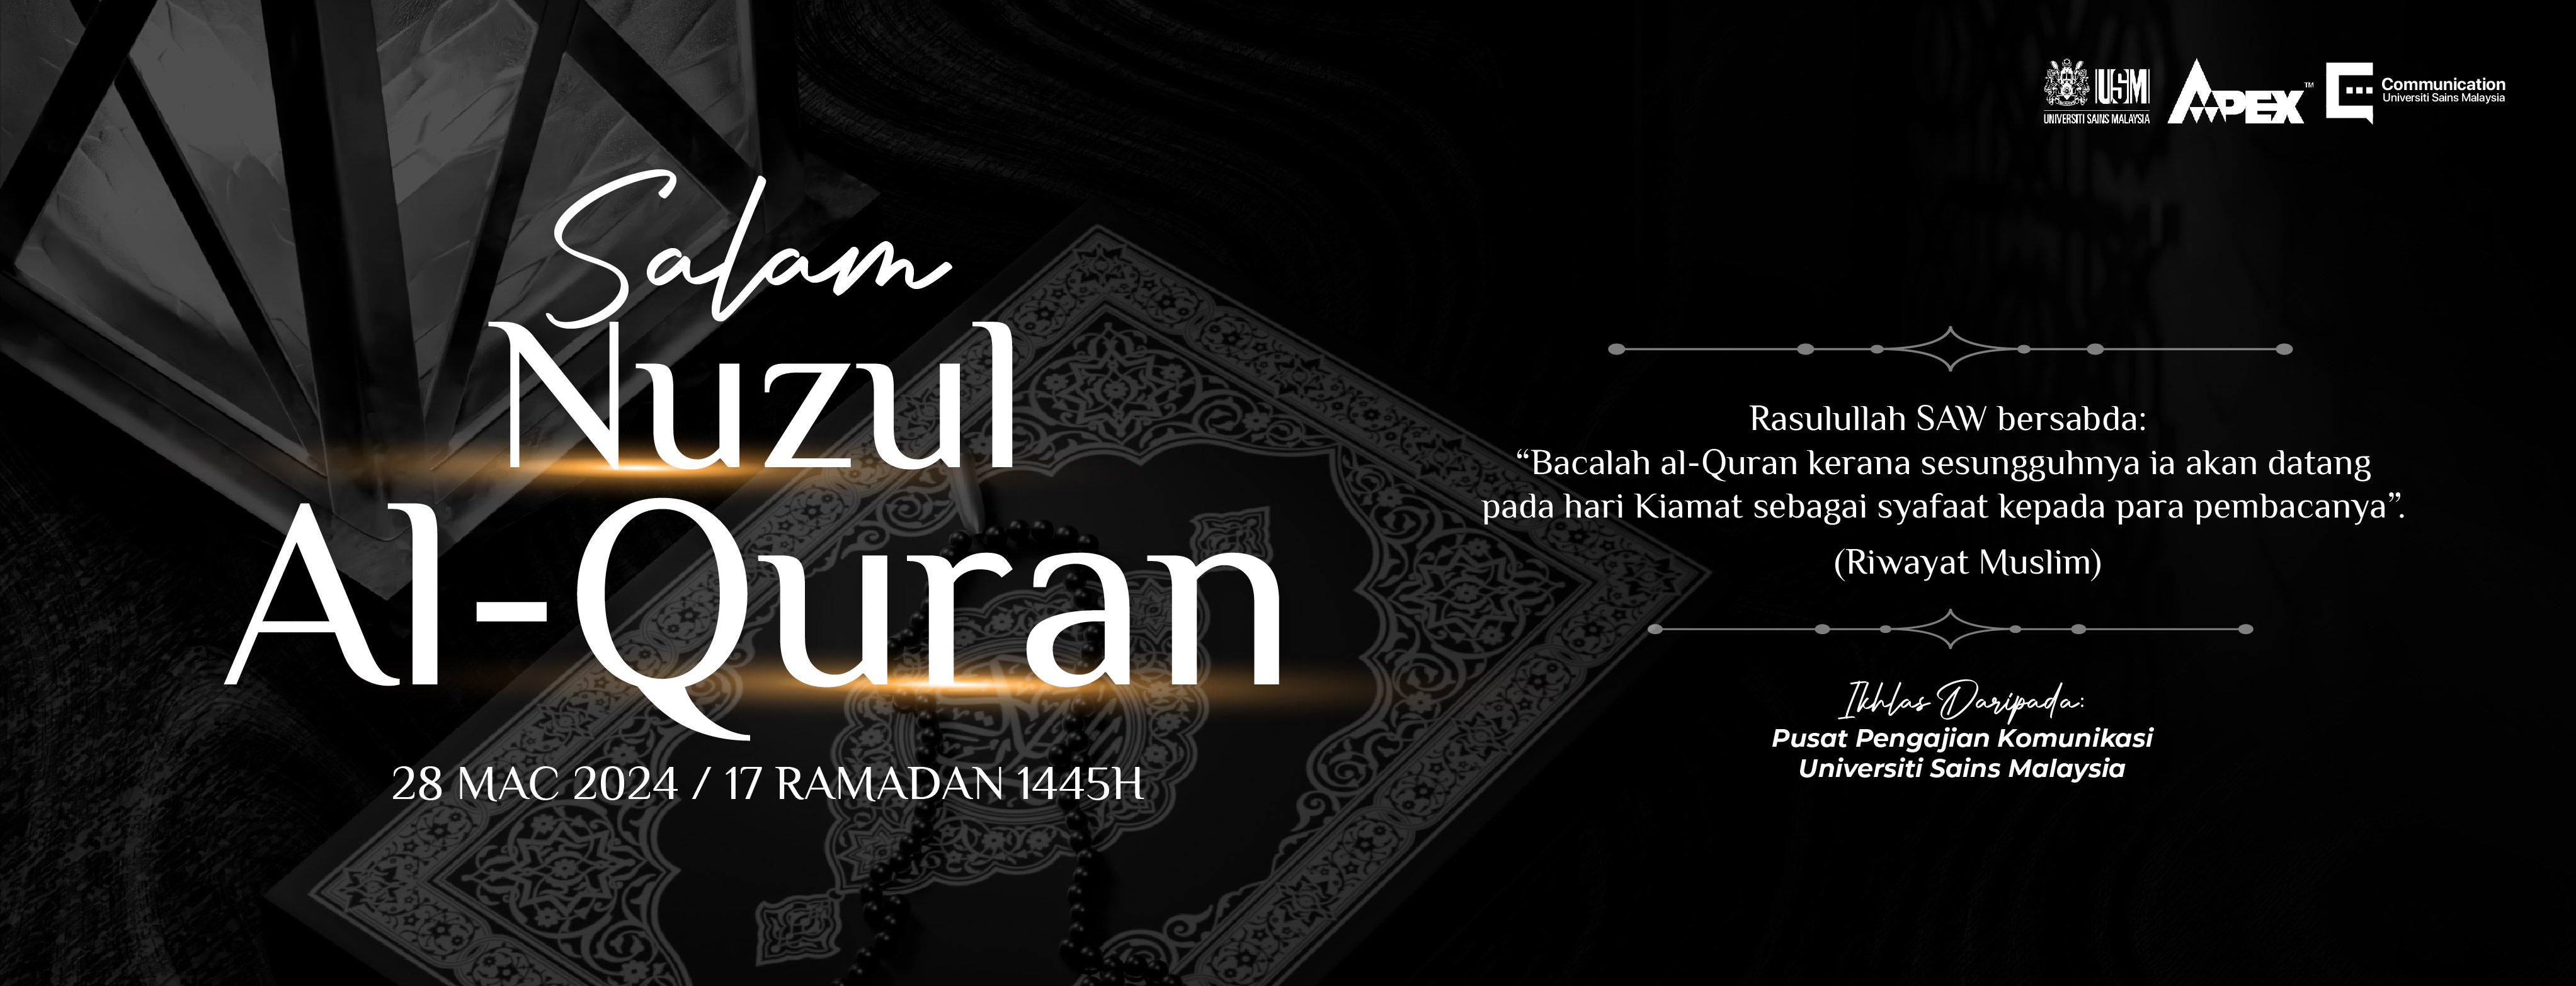 Salam Nuzul Quran 2024 03